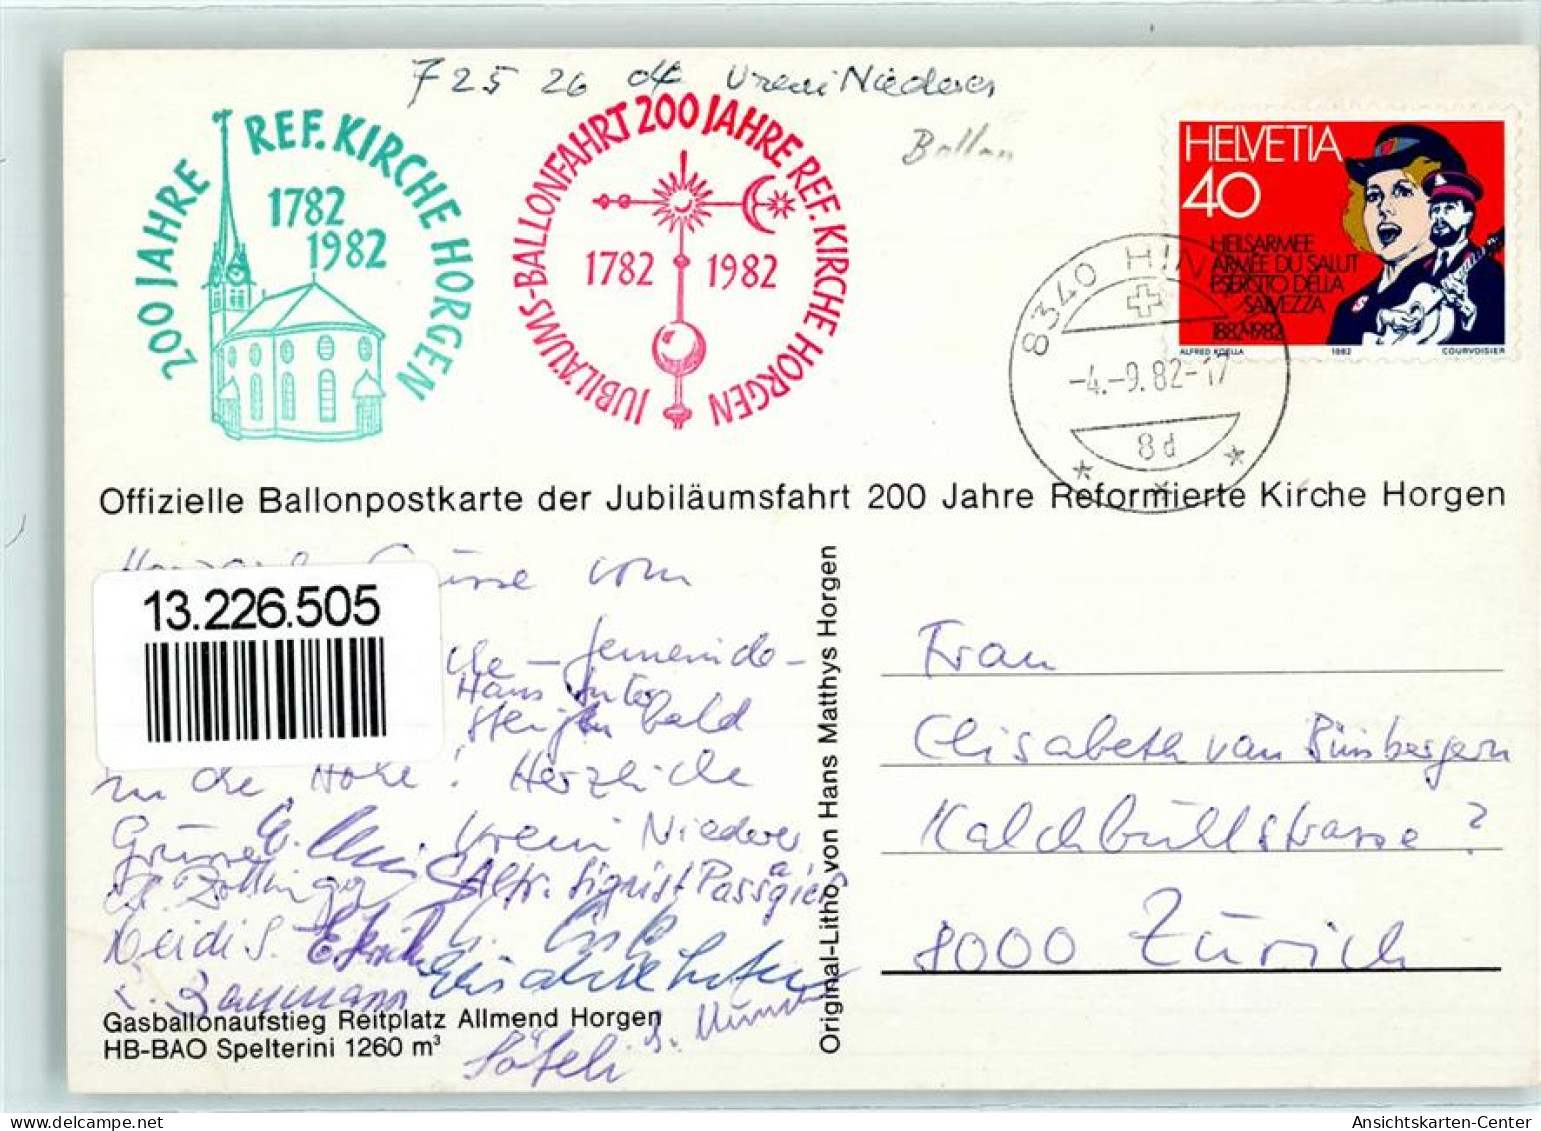 13226505 - Jubilaeumsfahrt 200 Jahre Reformierte Kirche Horgen - Luchtballon